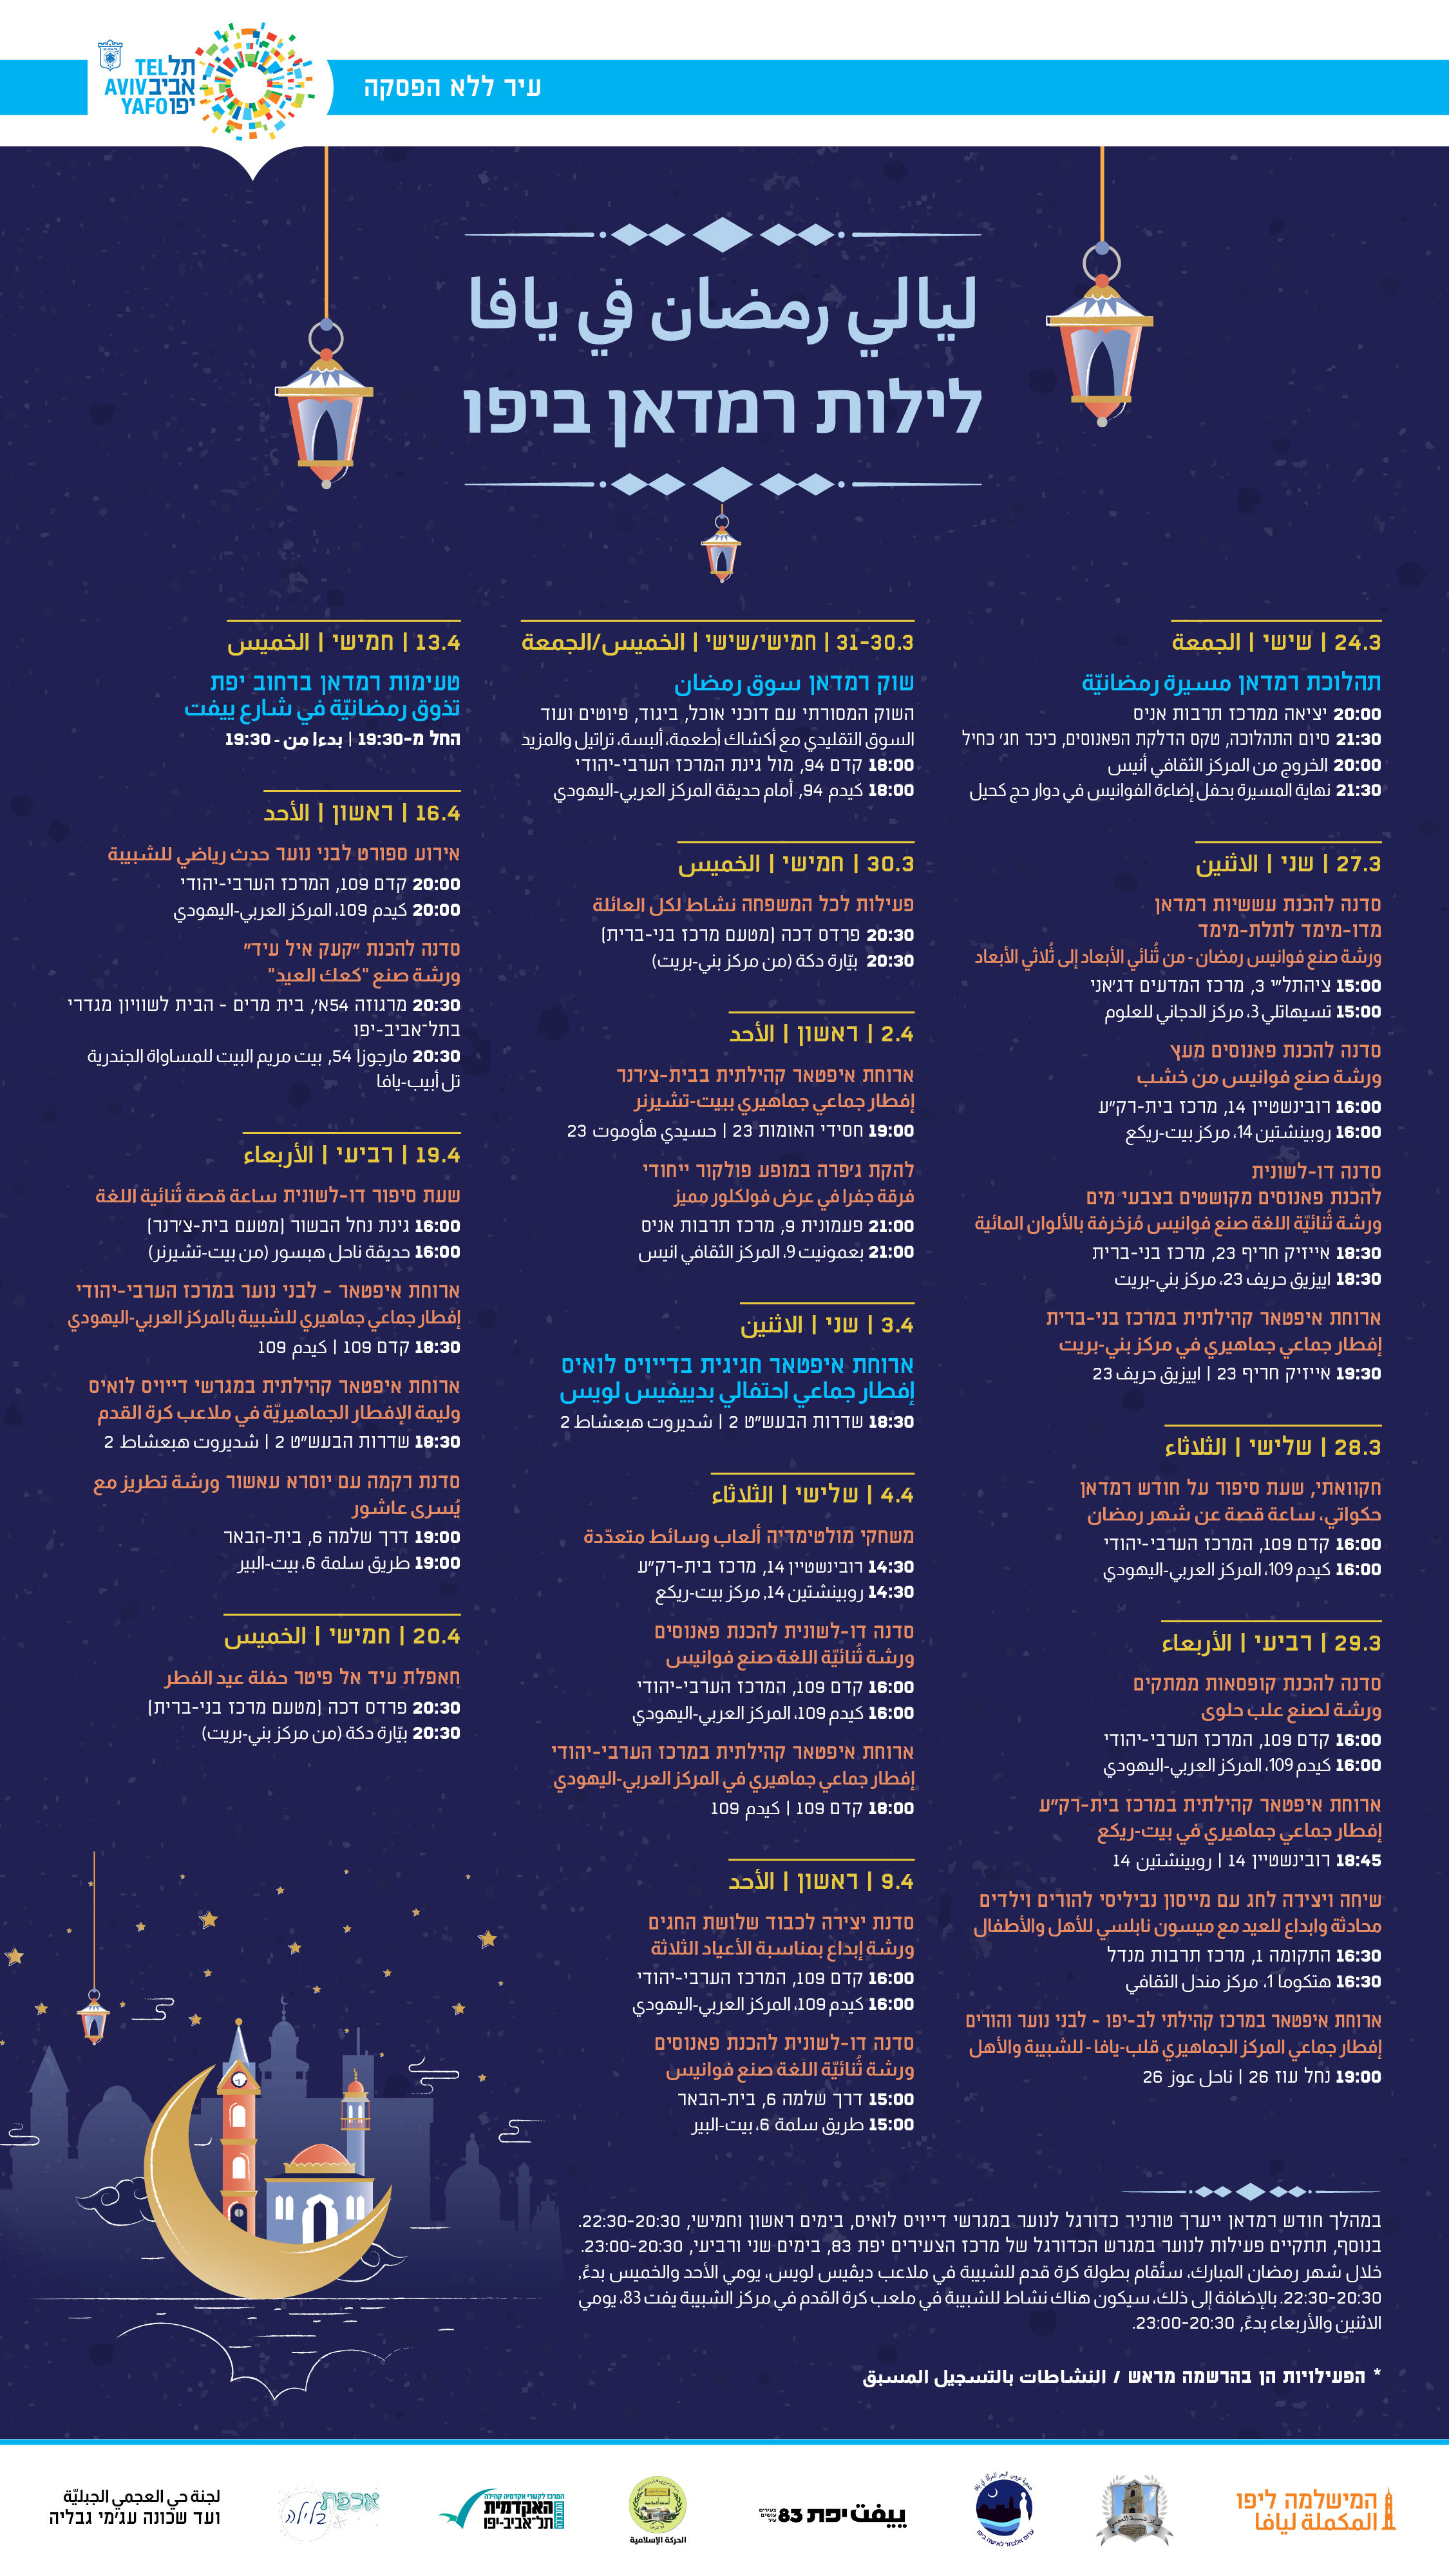  ليالي رمضان في يافا - فعاليات شيّقة طيلة أيام الشهر الفضيل 